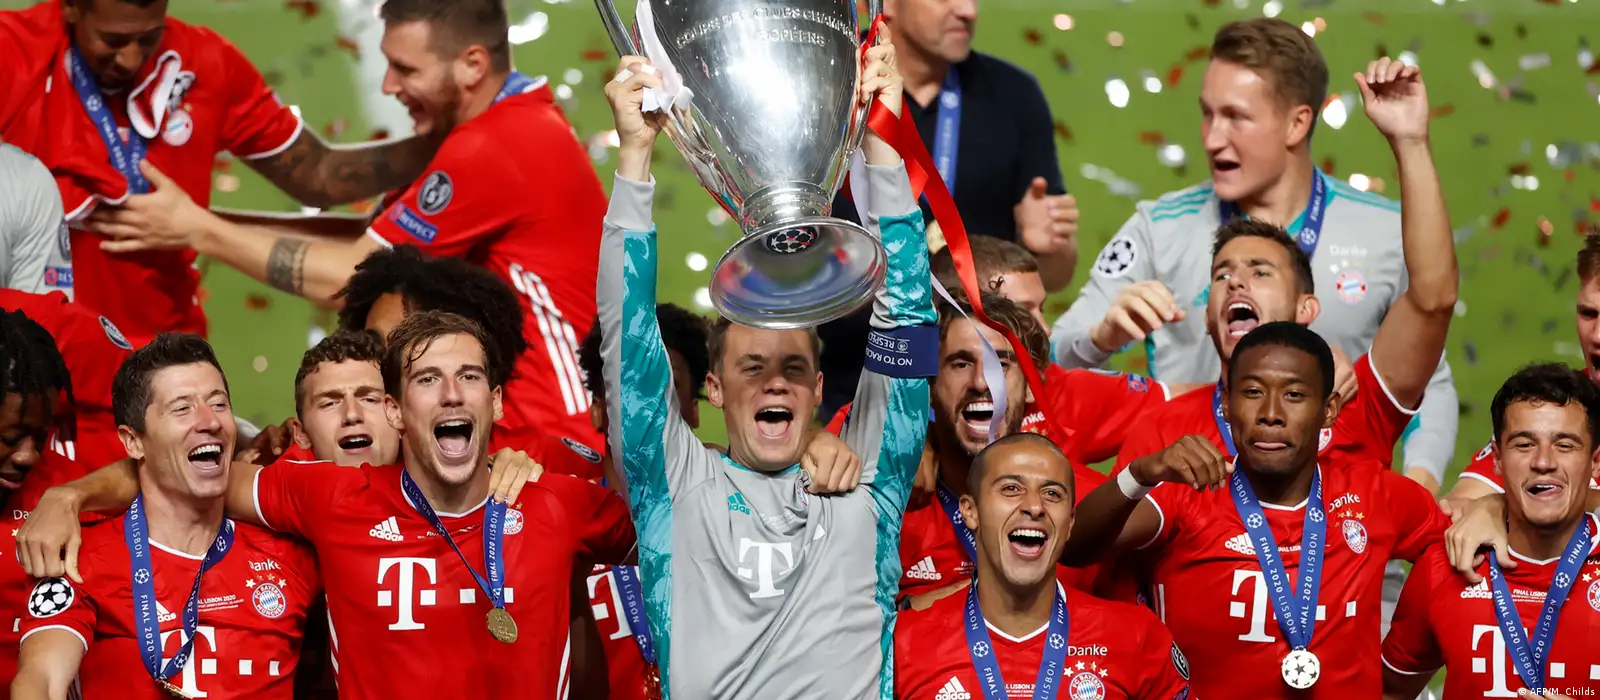 Vasco invencível - No próximo domingo, Bayern München e Paris Saint-Germain  irão disputar a grande final da Champions League, e um grande ex-jogador do  #VascodaGama pode levantar o troféu. Phillipe Coutinho pode